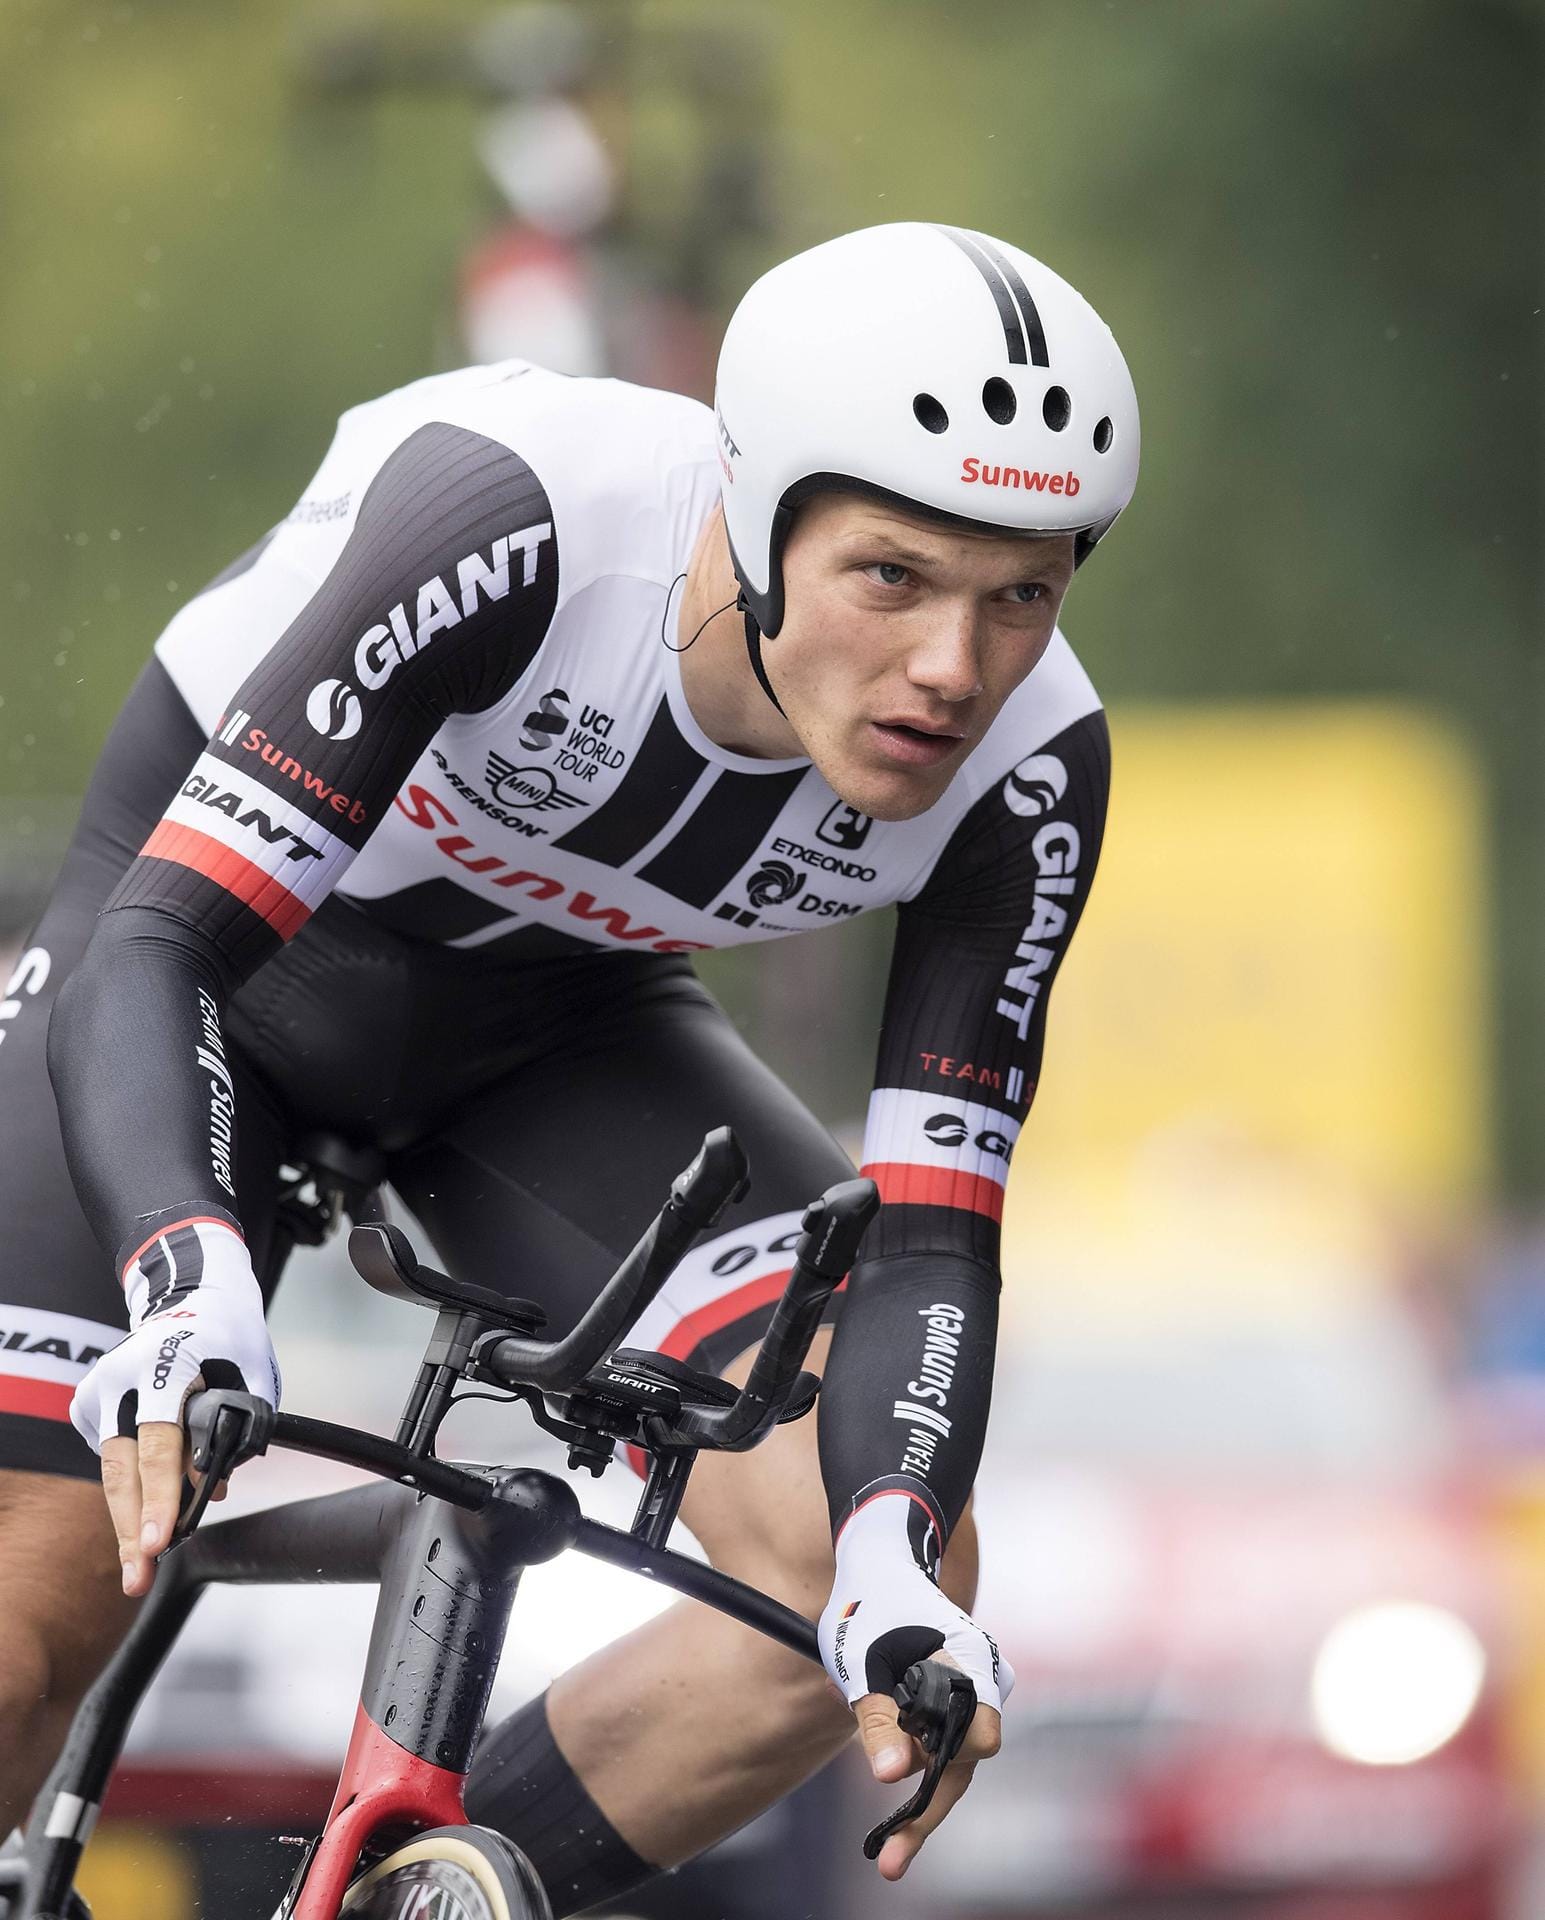 Nikias Arndt (26 Jahre, Sunweb): Er steht vor seiner zweiten Tour-Teilnahme und startet gemeinsam mit dem Etappensieger von 2015, Simon Geschke. 2017 belegte Arndt den zweiten Platz auf der 19. Tour-Etappe. Der 26-Jährige zählt zu den Sprintern, die sich auch im schwierigen Gelände behaupten können.